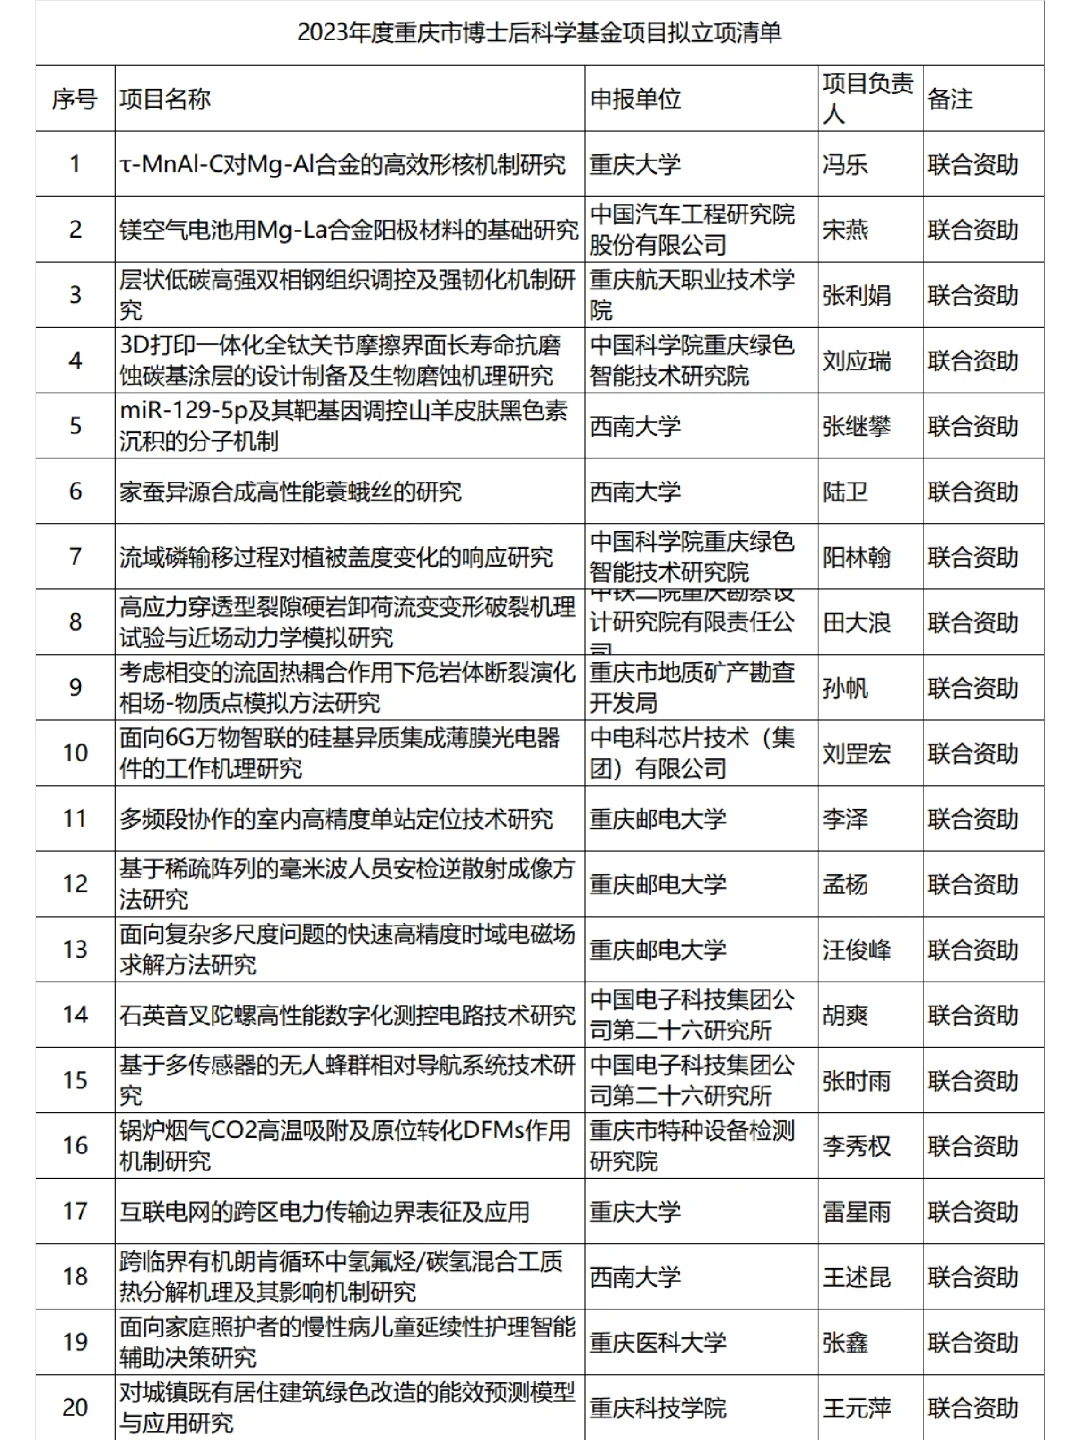 重庆市博士后科学基金立项名单